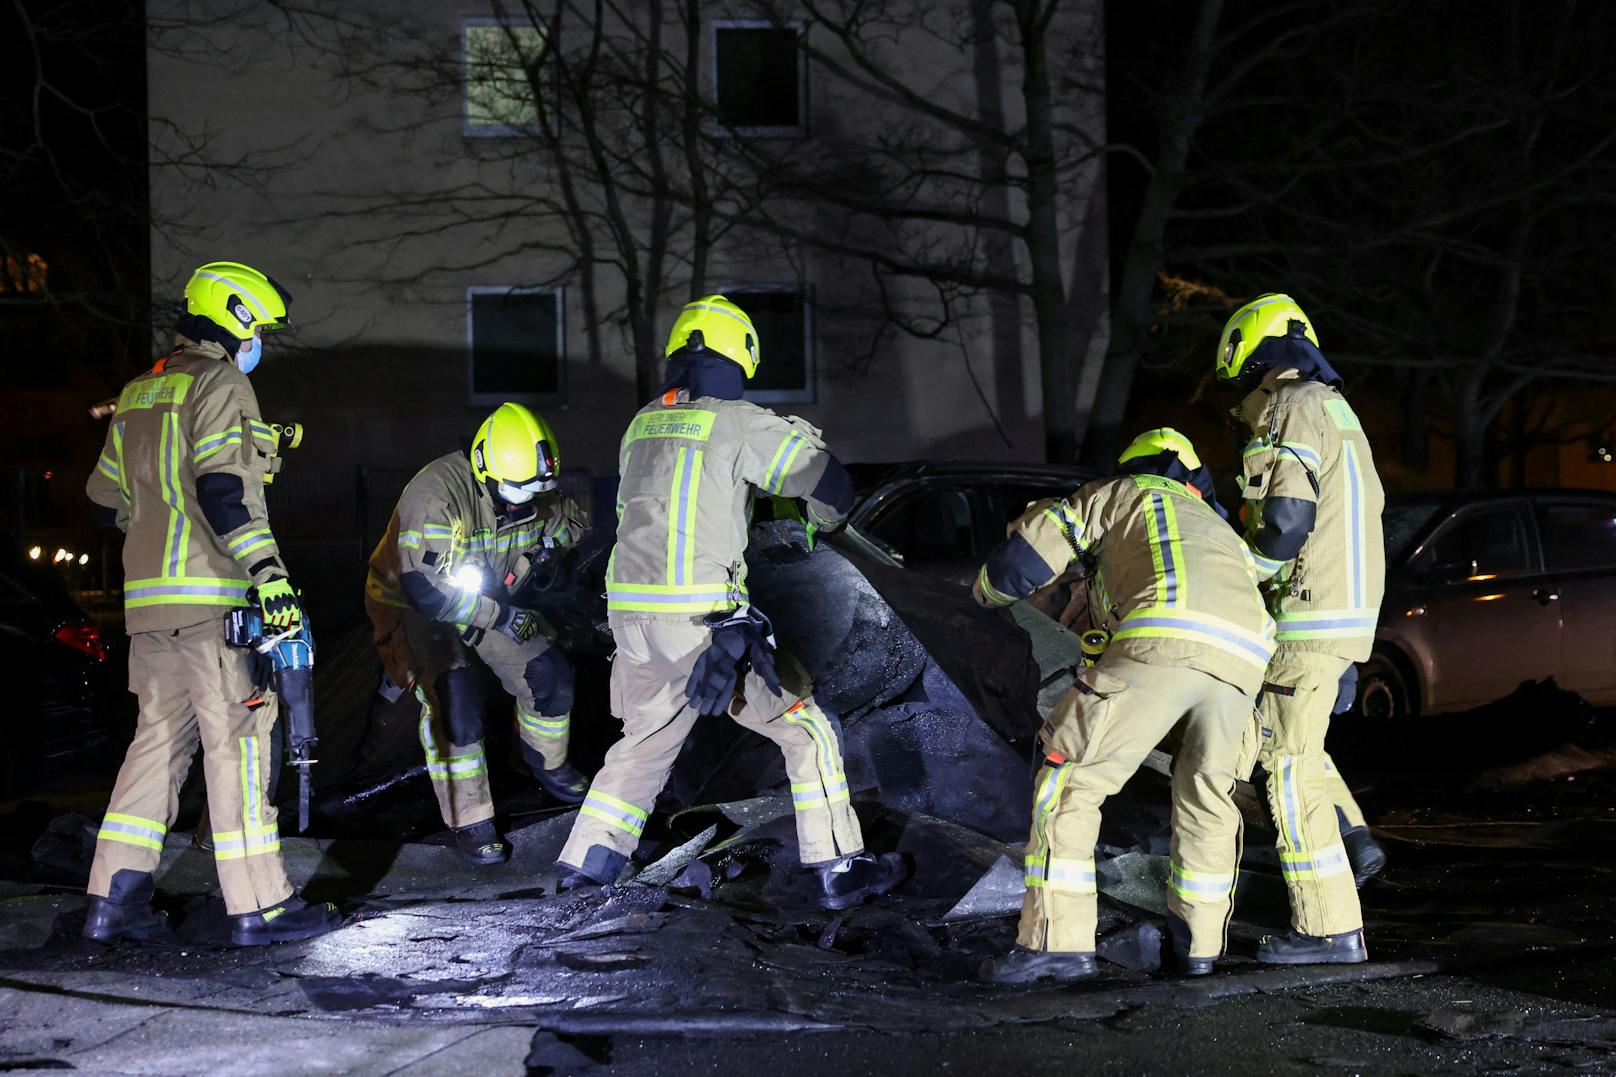 Feuerwehrleute in Berlin bergen Trümmer, die der Sturm von einem Dach geweht hatte.